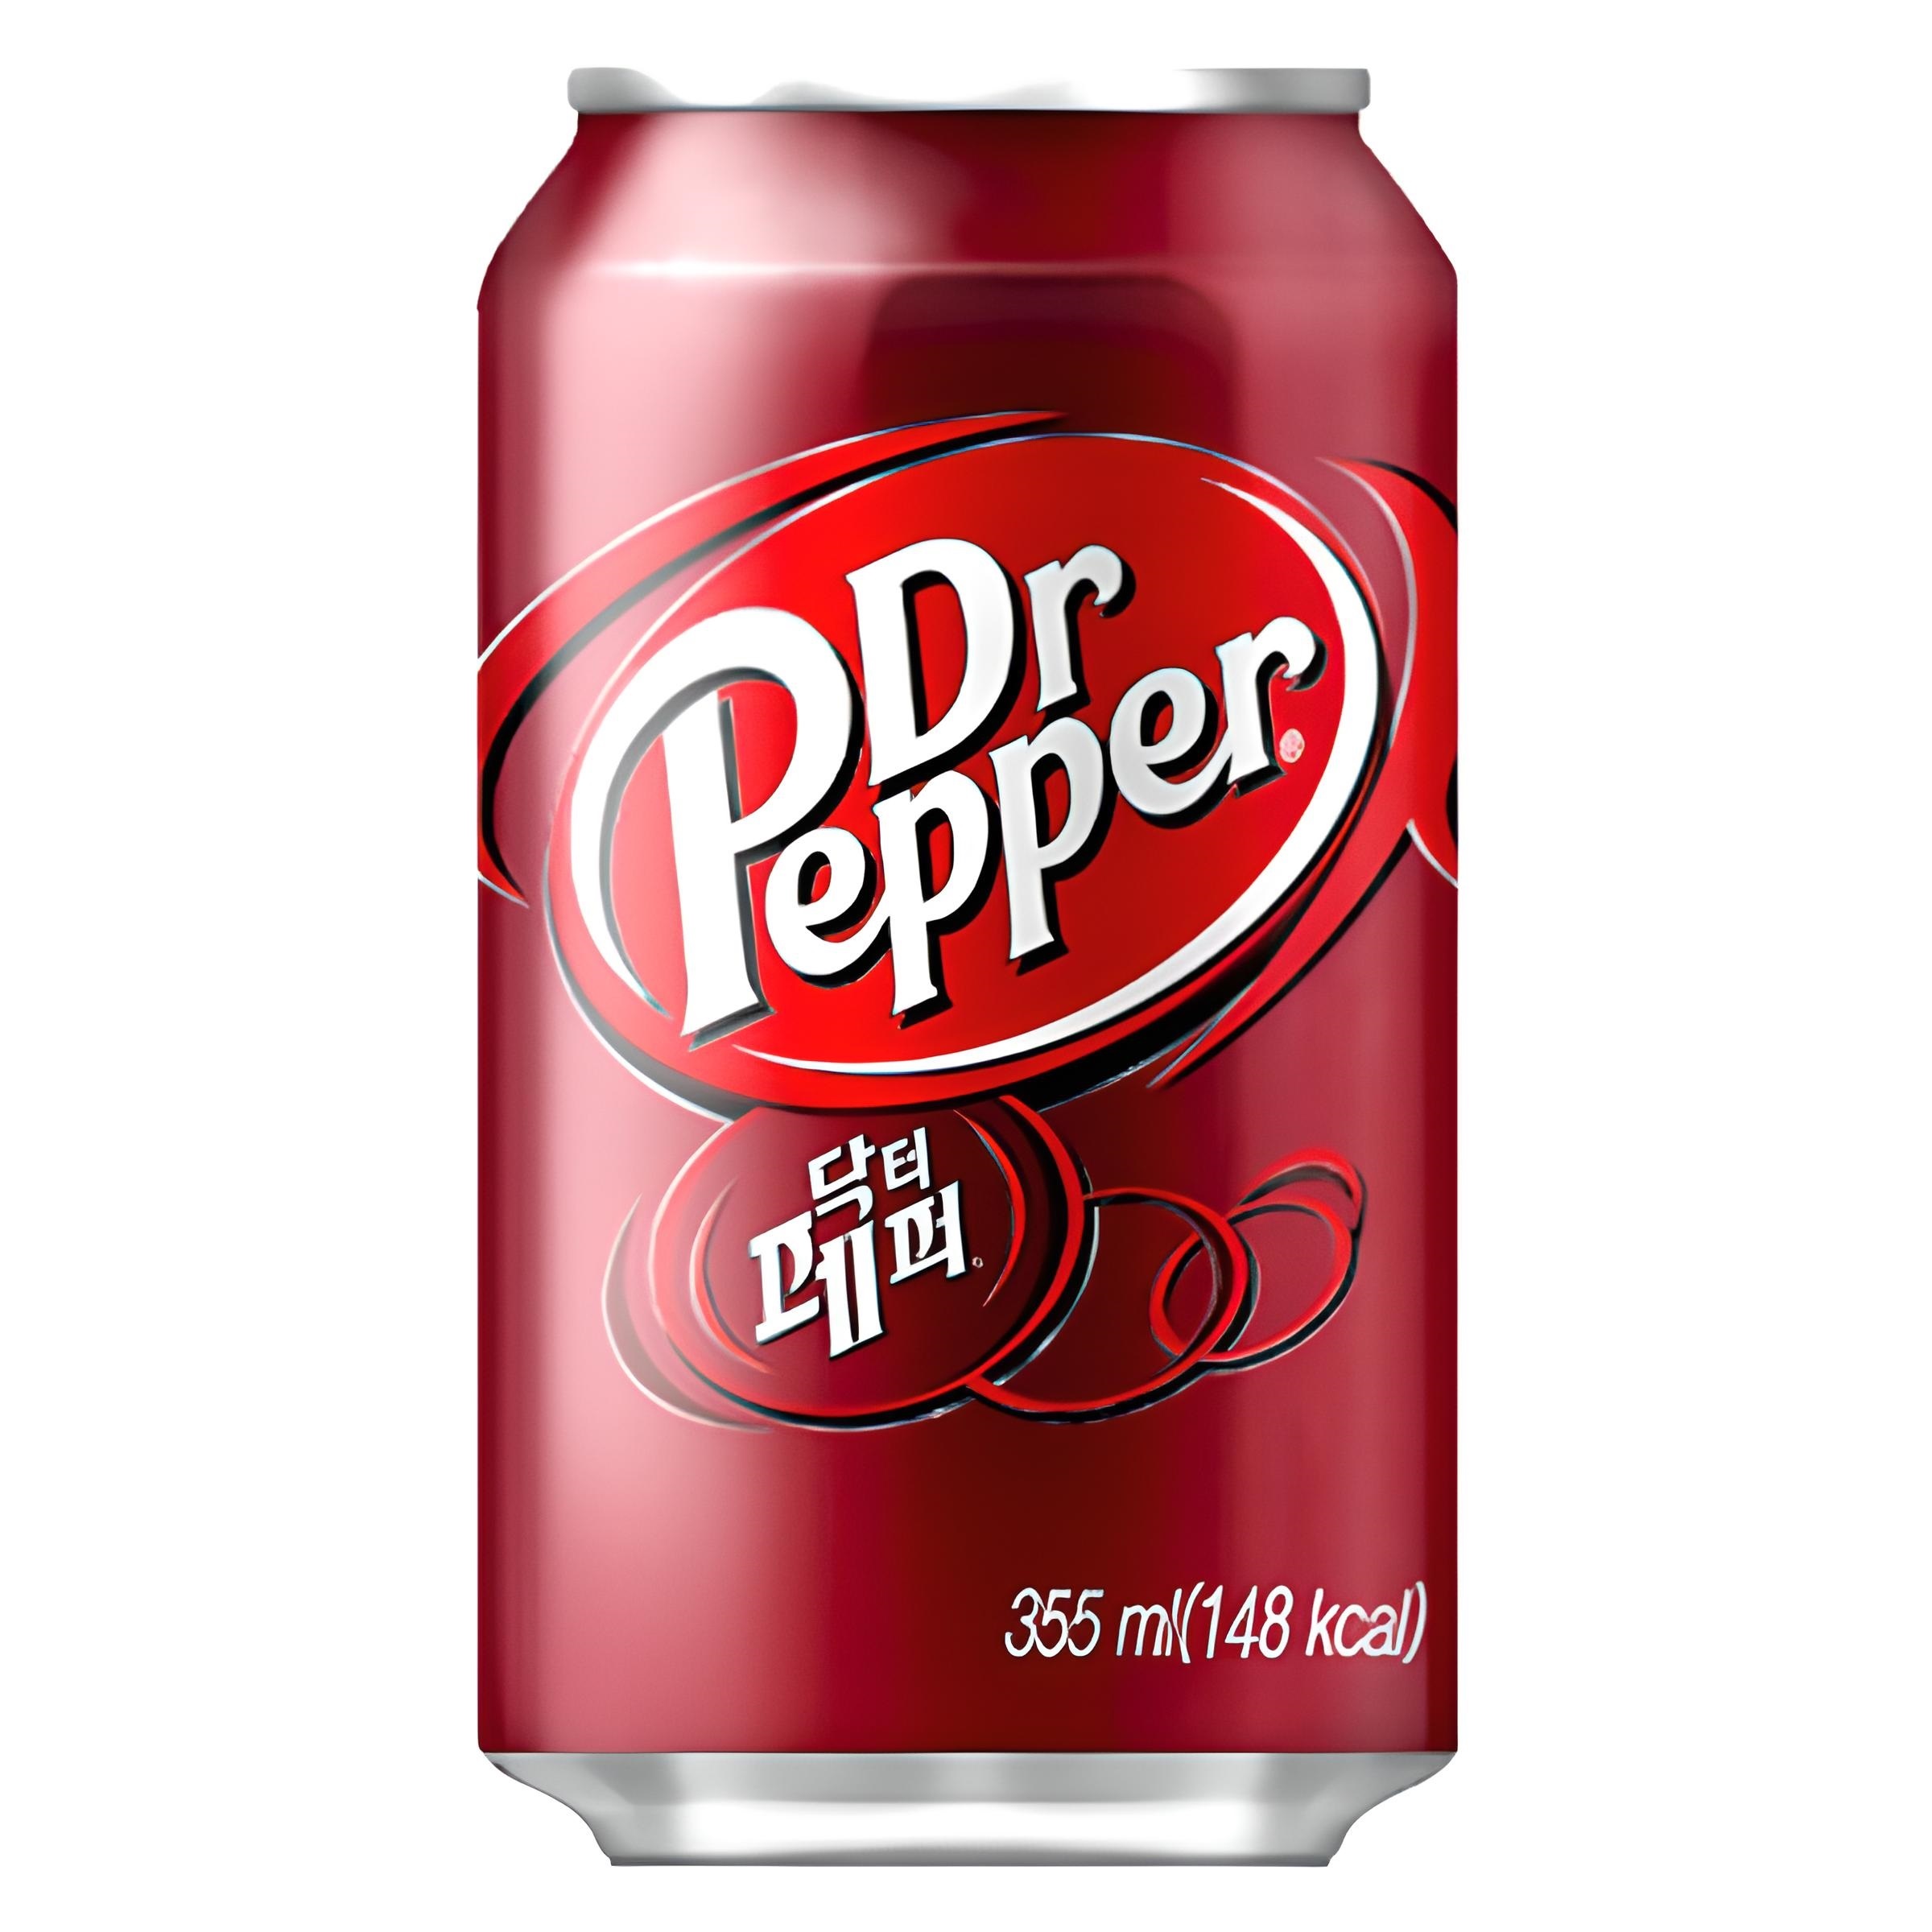 Pepper состав. Доктор Пеппер вкусы. Виноградный доктор Пеппер. Газировка доктор Пеппер. Доктор Пеппер этикетка.